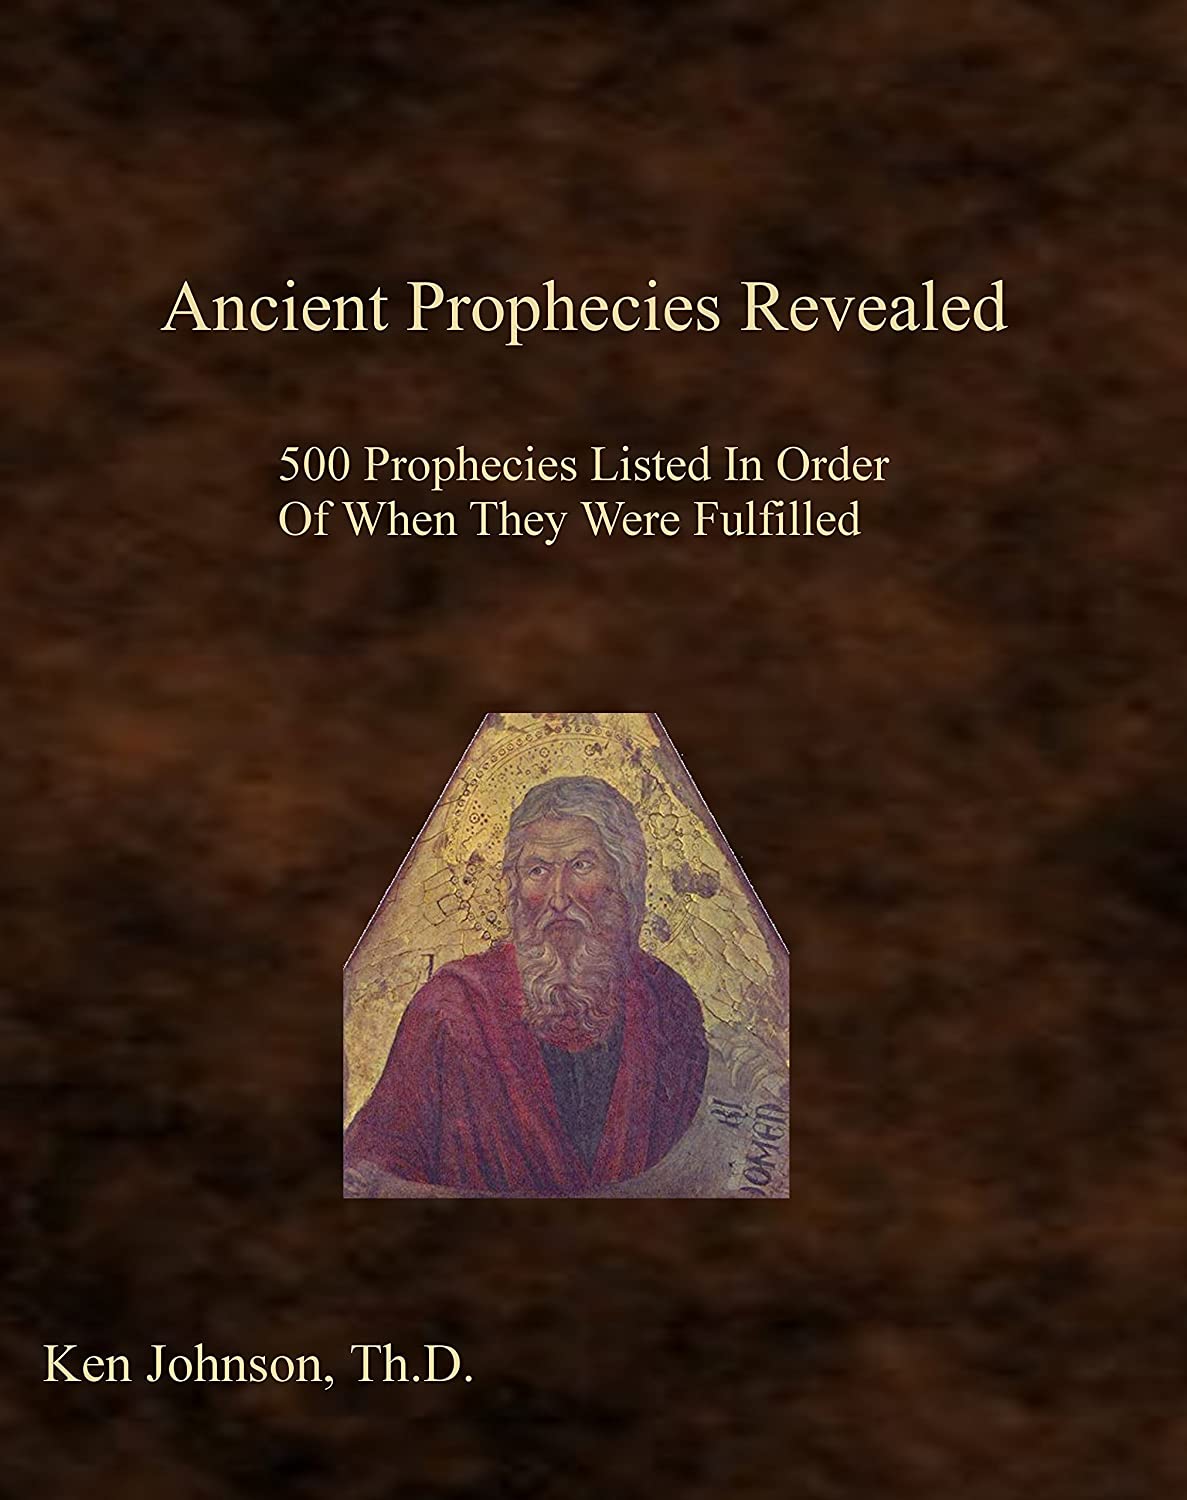 Ancient prophecies revealed